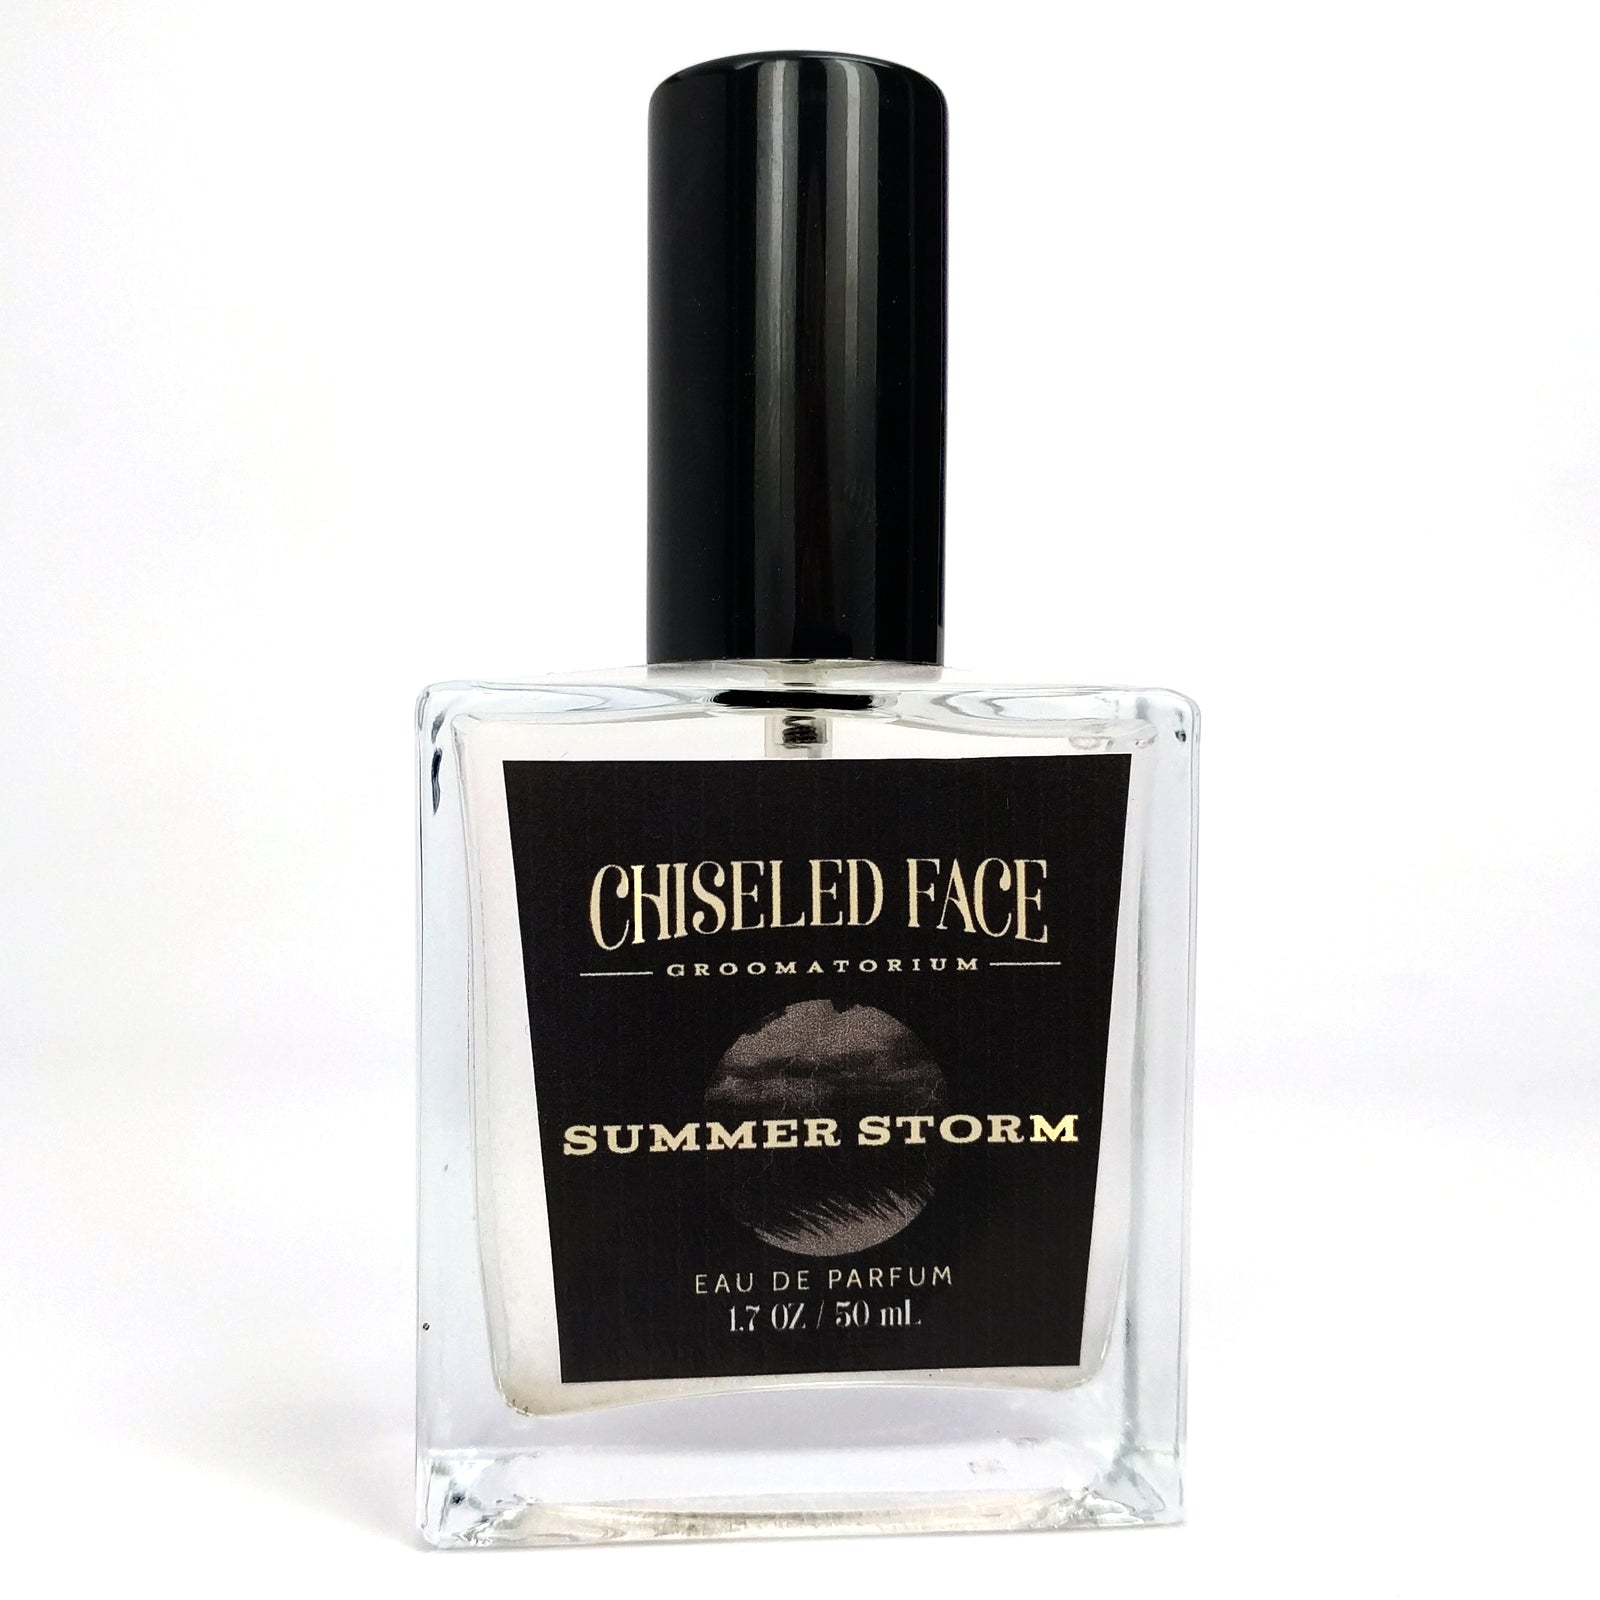 Chiseled Face - Summer Storm - Eau de Parfum EDP Cologne